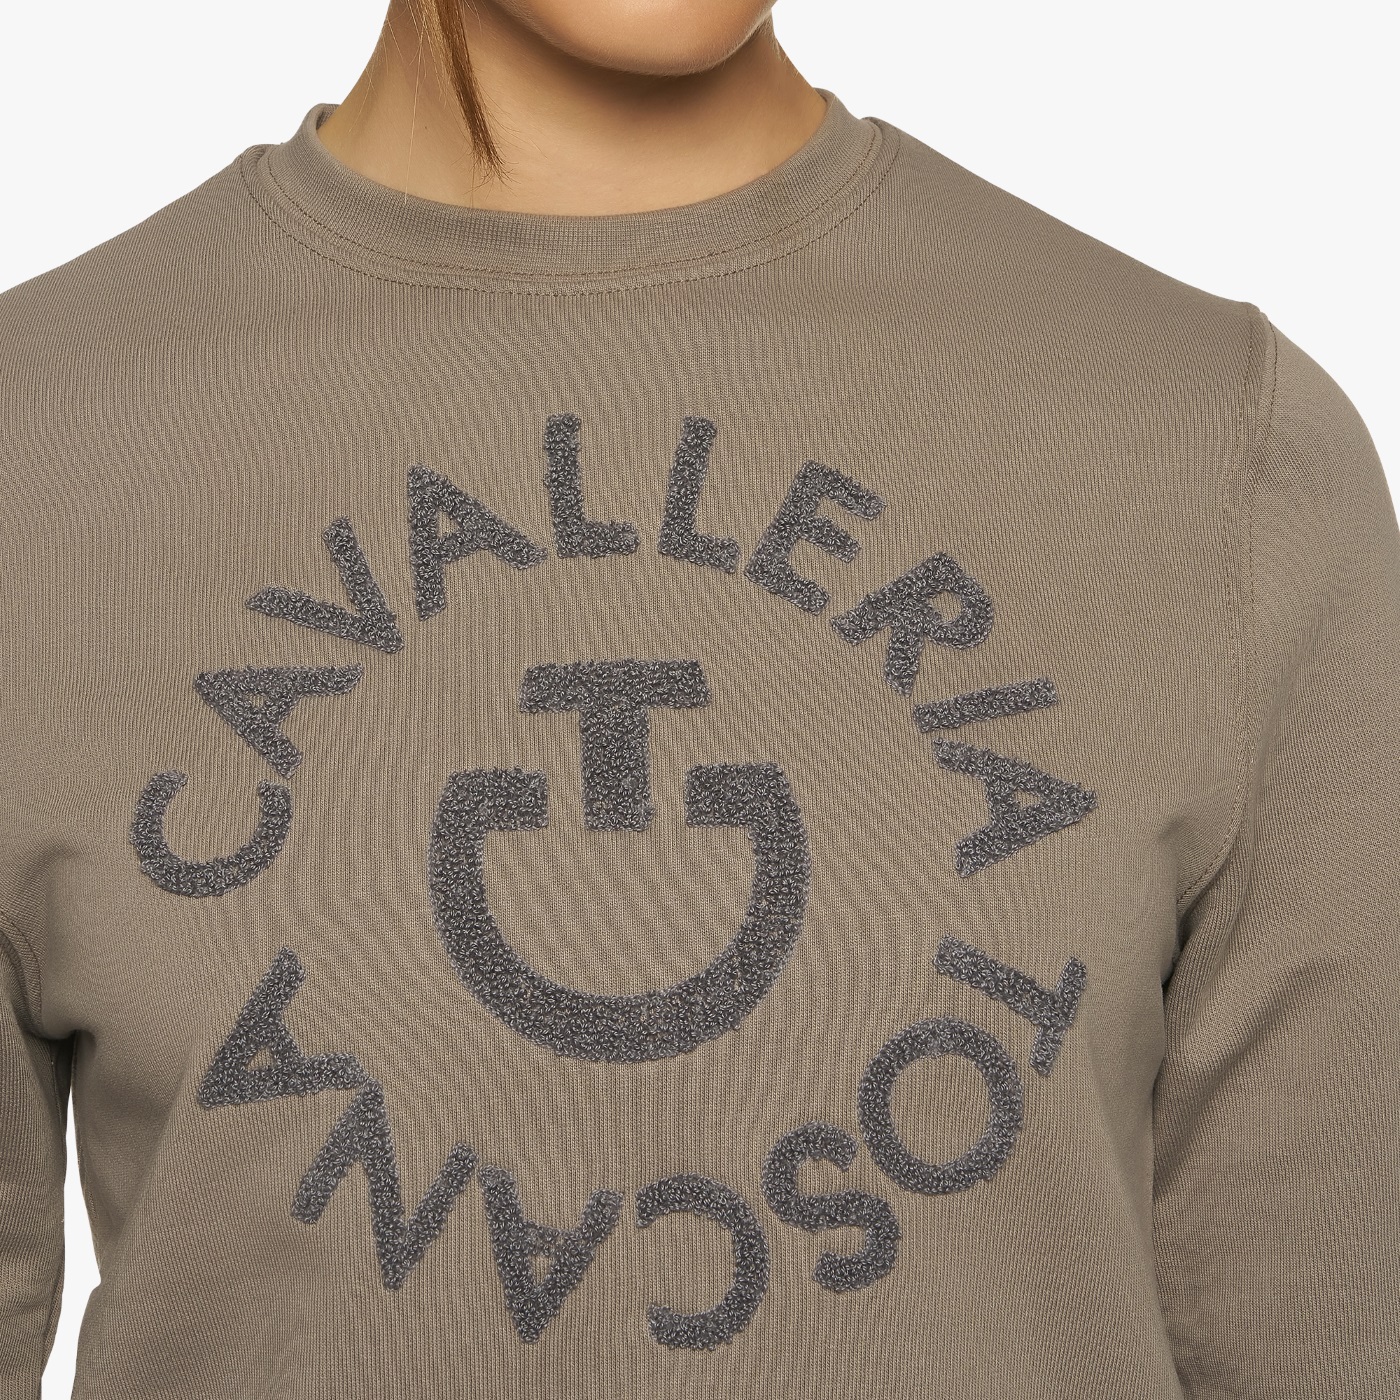 CAVALLERIA TOSCANA Damen Baumwoll Sweatshirt mit Logo - medium grey - M - 10